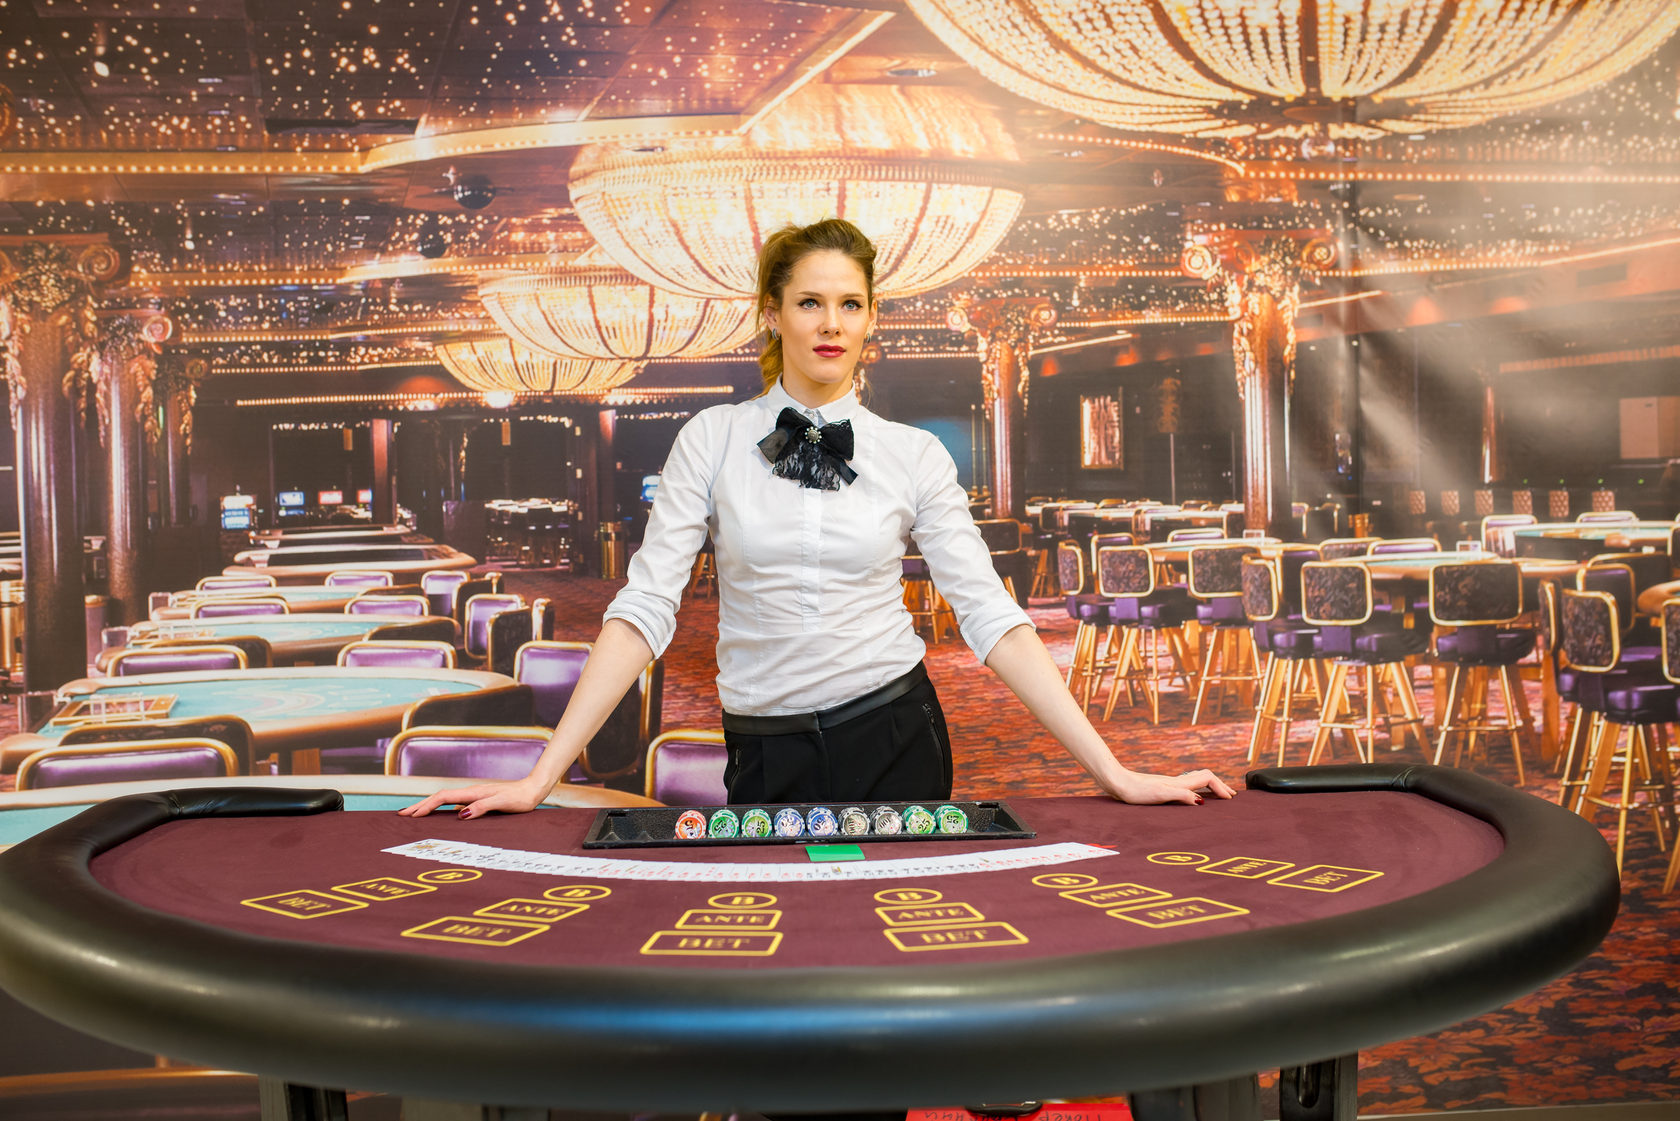 Покер мира казино отзывы игровые автоматы помеха сигнала